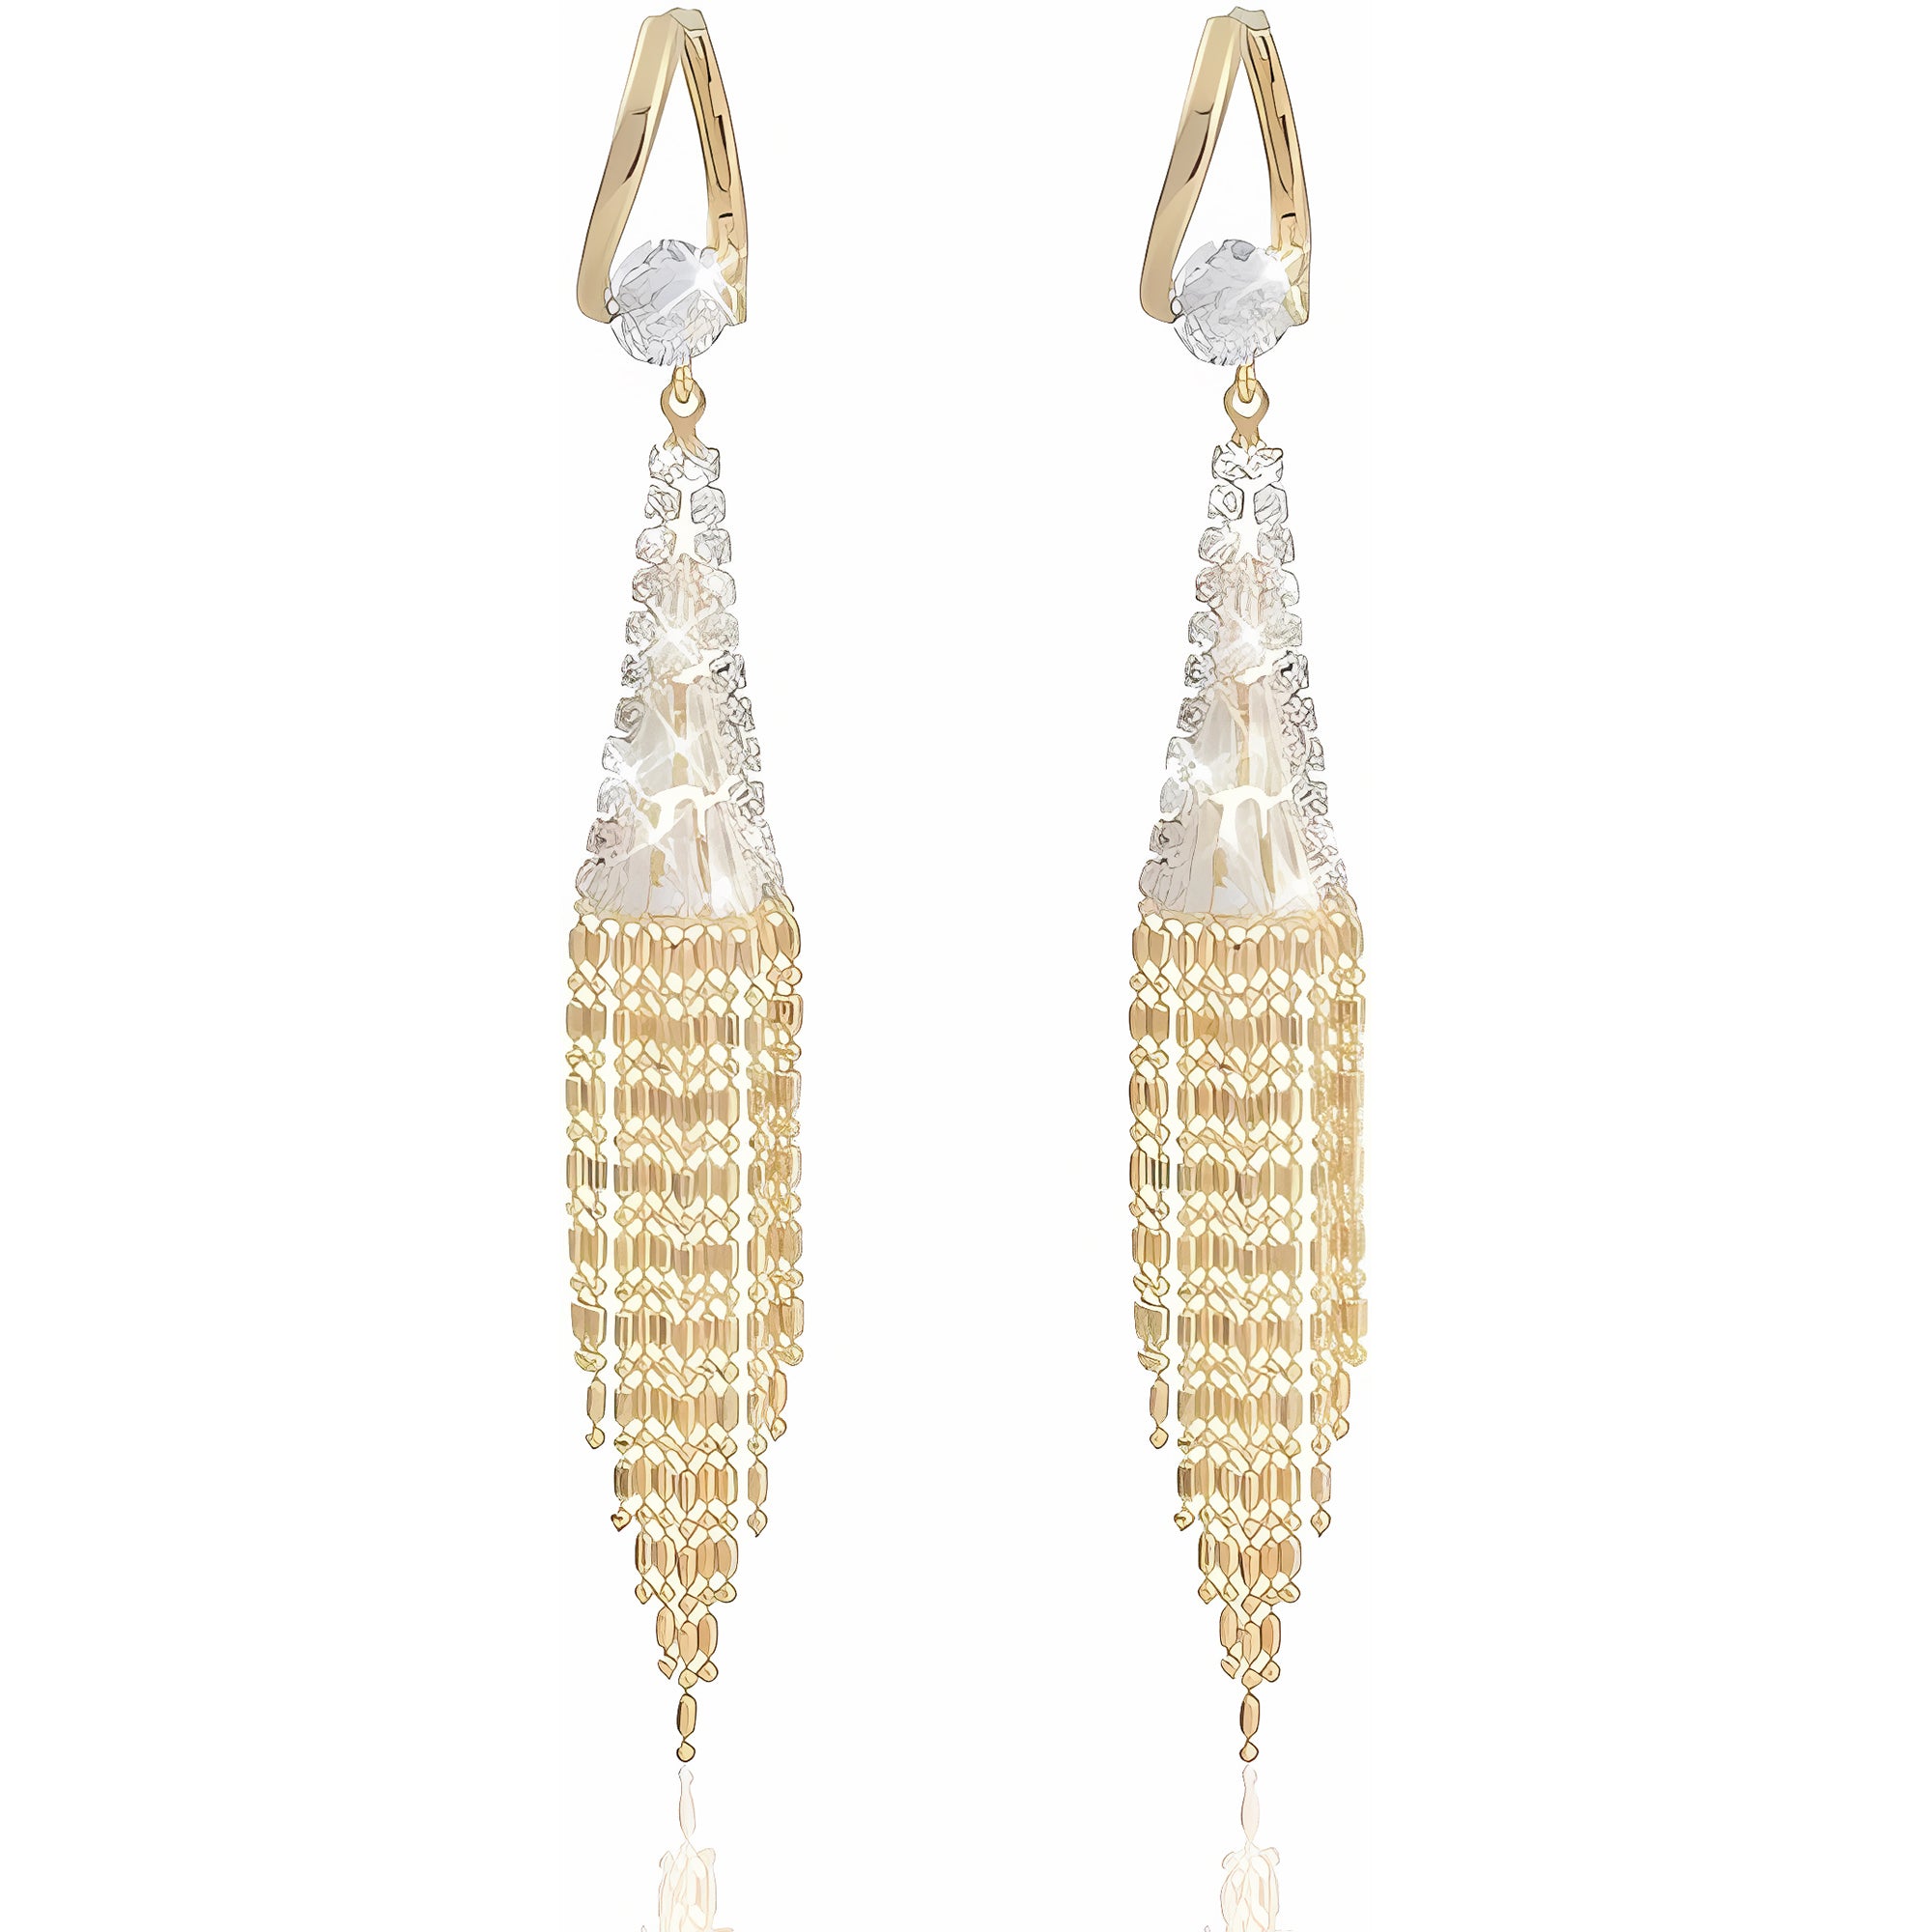 Gold Earrings for Women Chandelier Dangle Earrings 18k Gold Plated Cubic Zircon Drop Earrings Crystal Fringe Long Tassel Earrings